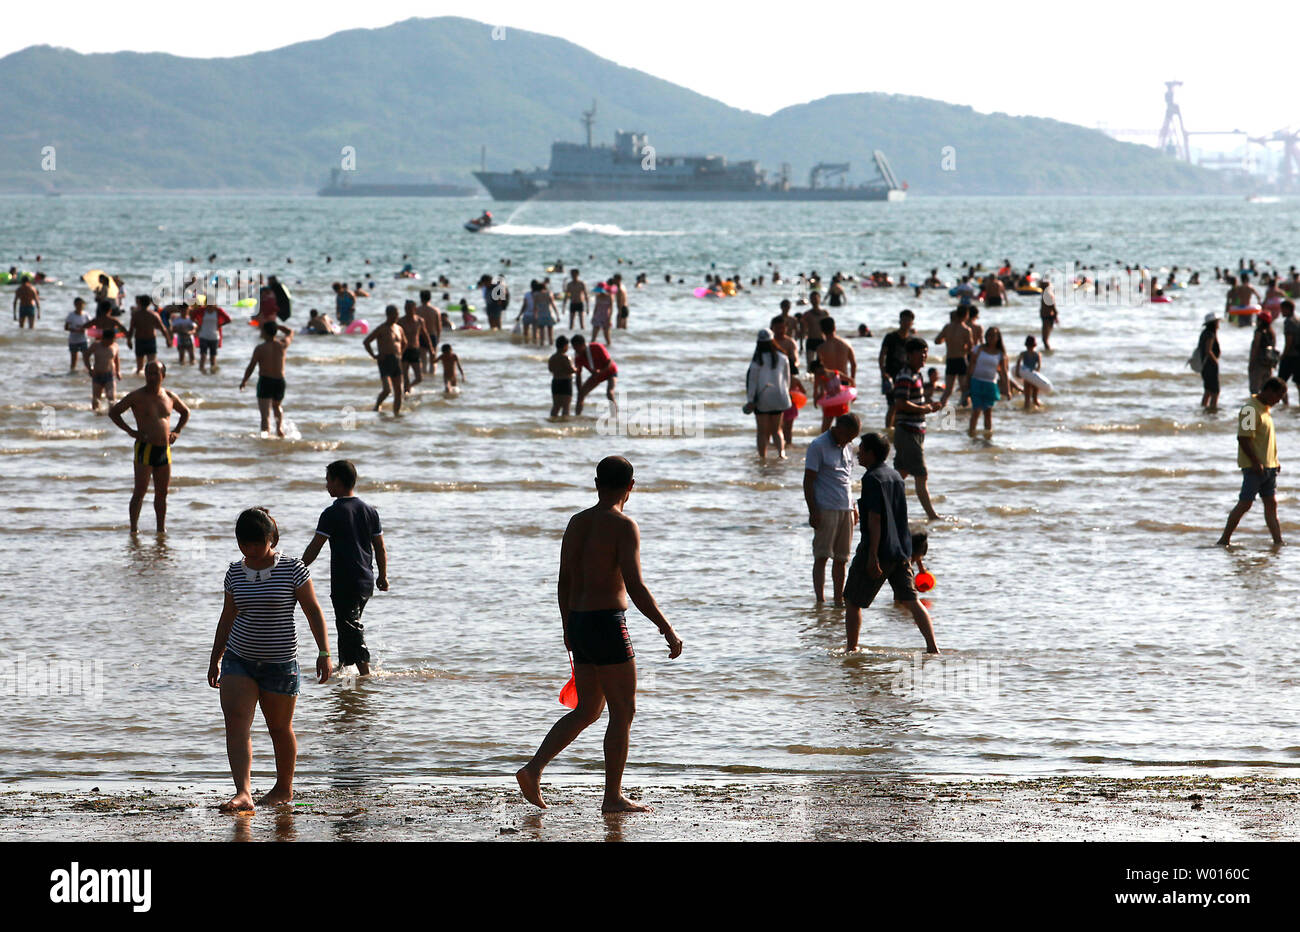 Les touristes chinois visiter une plage située dans une baie à partir d'un port maritime commercial vital et à proximité d'une importante base navale dans la ville côtière Qingdao, un port important dans l'est de la province du Shandong, le 18 août 2014. Qingdao est le foyer de la flotte de la mer du Nord, considéré comme l'un des pays les plus importantes flottes navales en raison de sa proximité avec la Corée du Sud, Japon et Taiwan. UPI/Stephen Shaver Banque D'Images